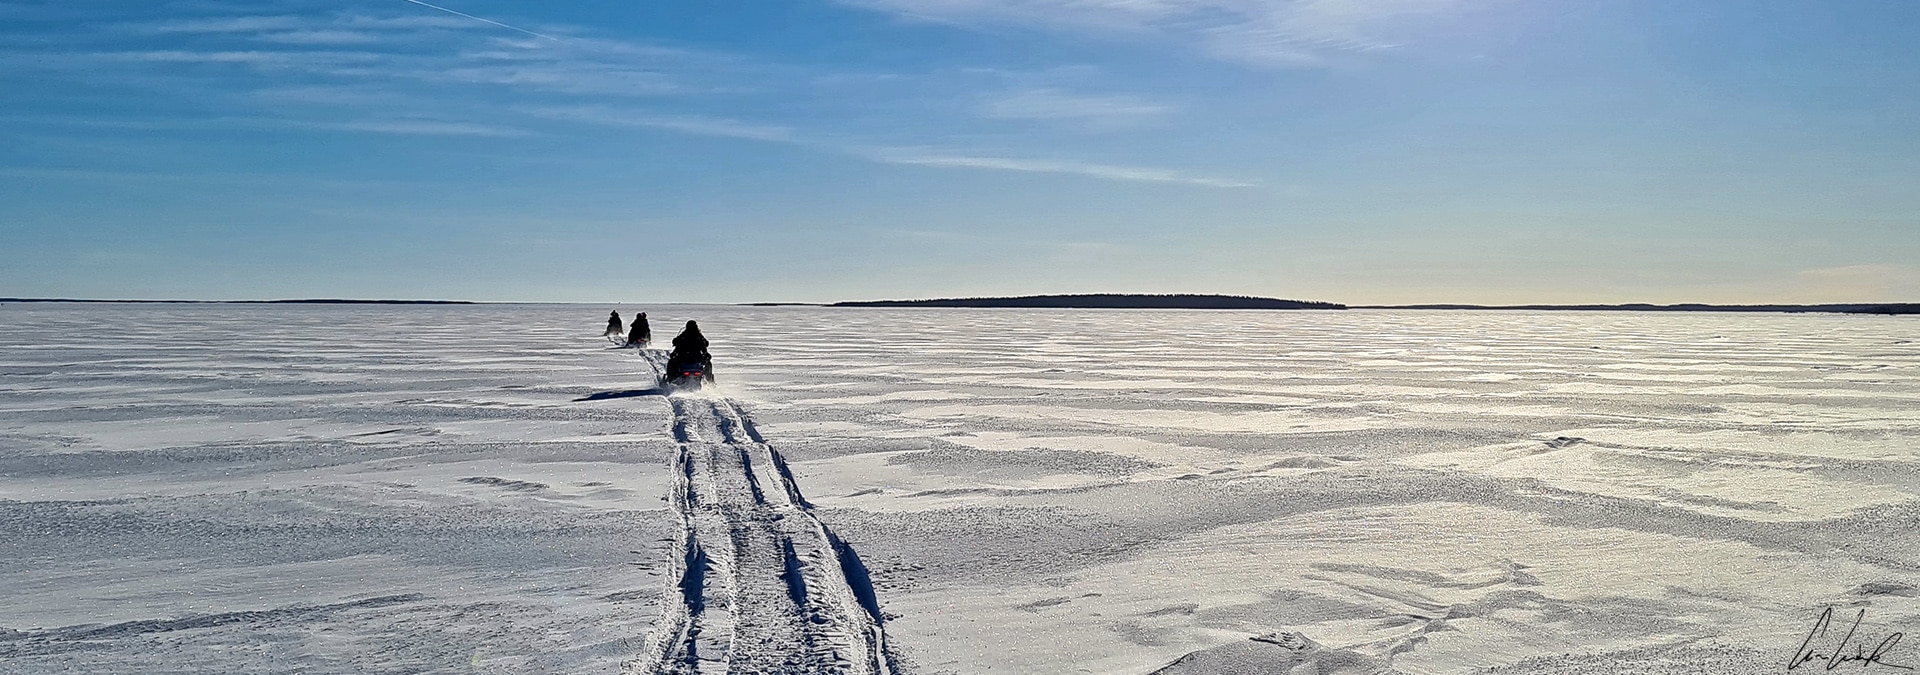 La balade en motoneige commence sur la mer gelée, une grande étendue blanche à perte de vue.